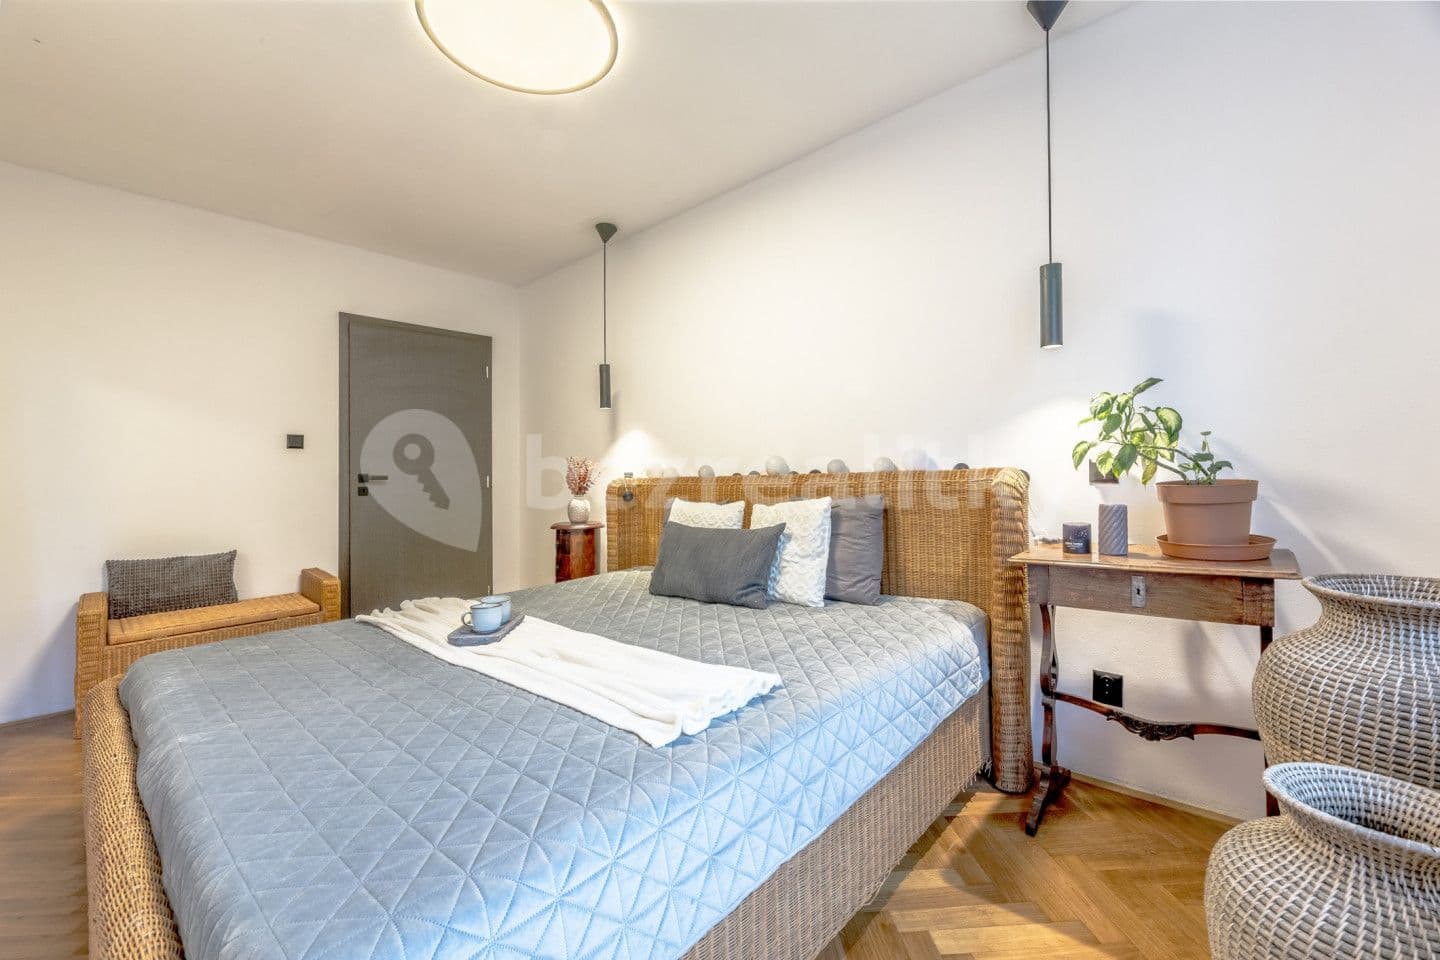 2 bedroom with open-plan kitchen flat for sale, 76 m², nám. T.G.Masaryka, Poděbrady, Středočeský Region